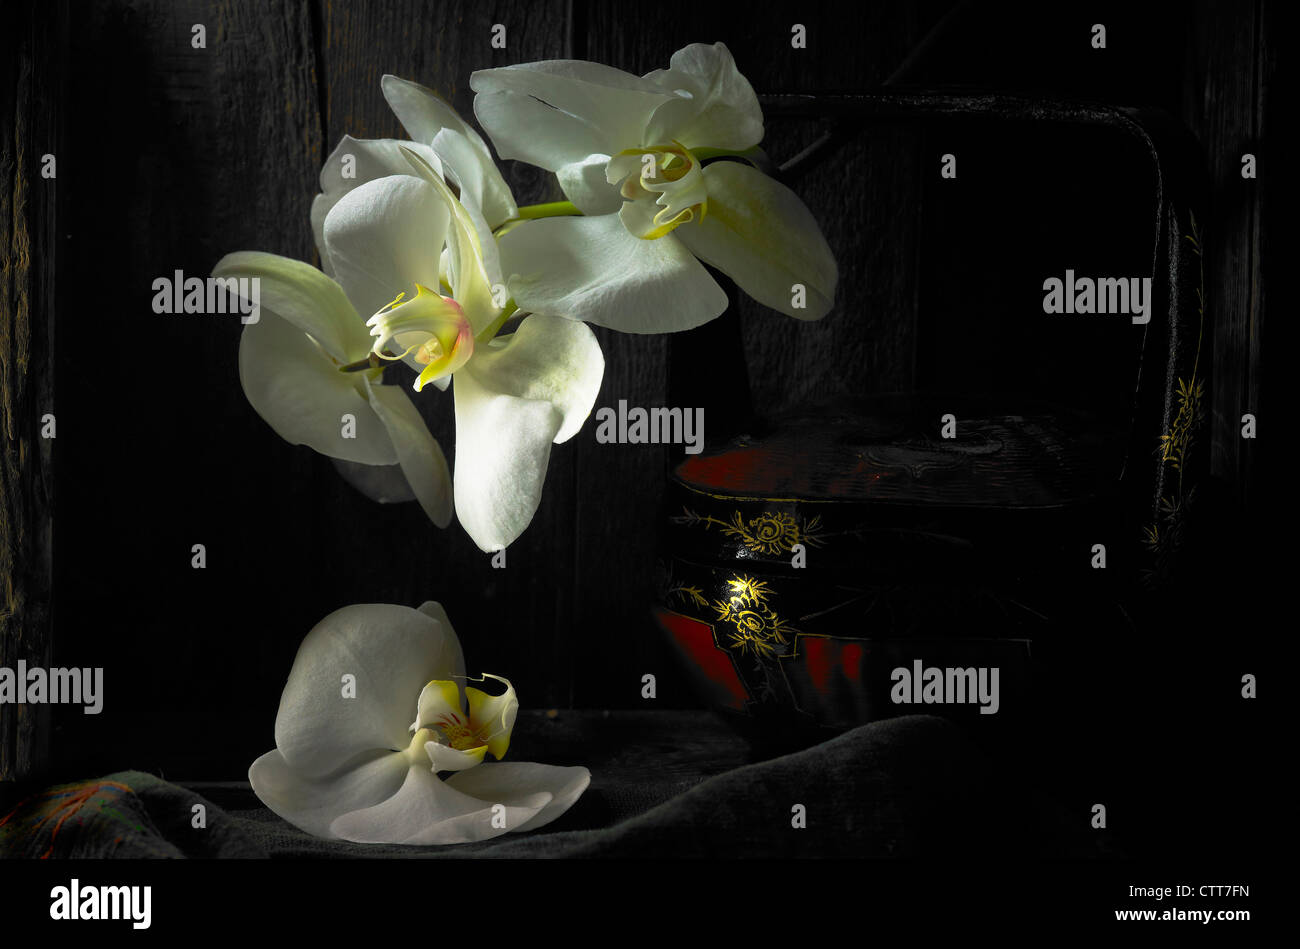 Phalaenopsis amabilis, White Moth orchid flowers with a black background. Stock Photo